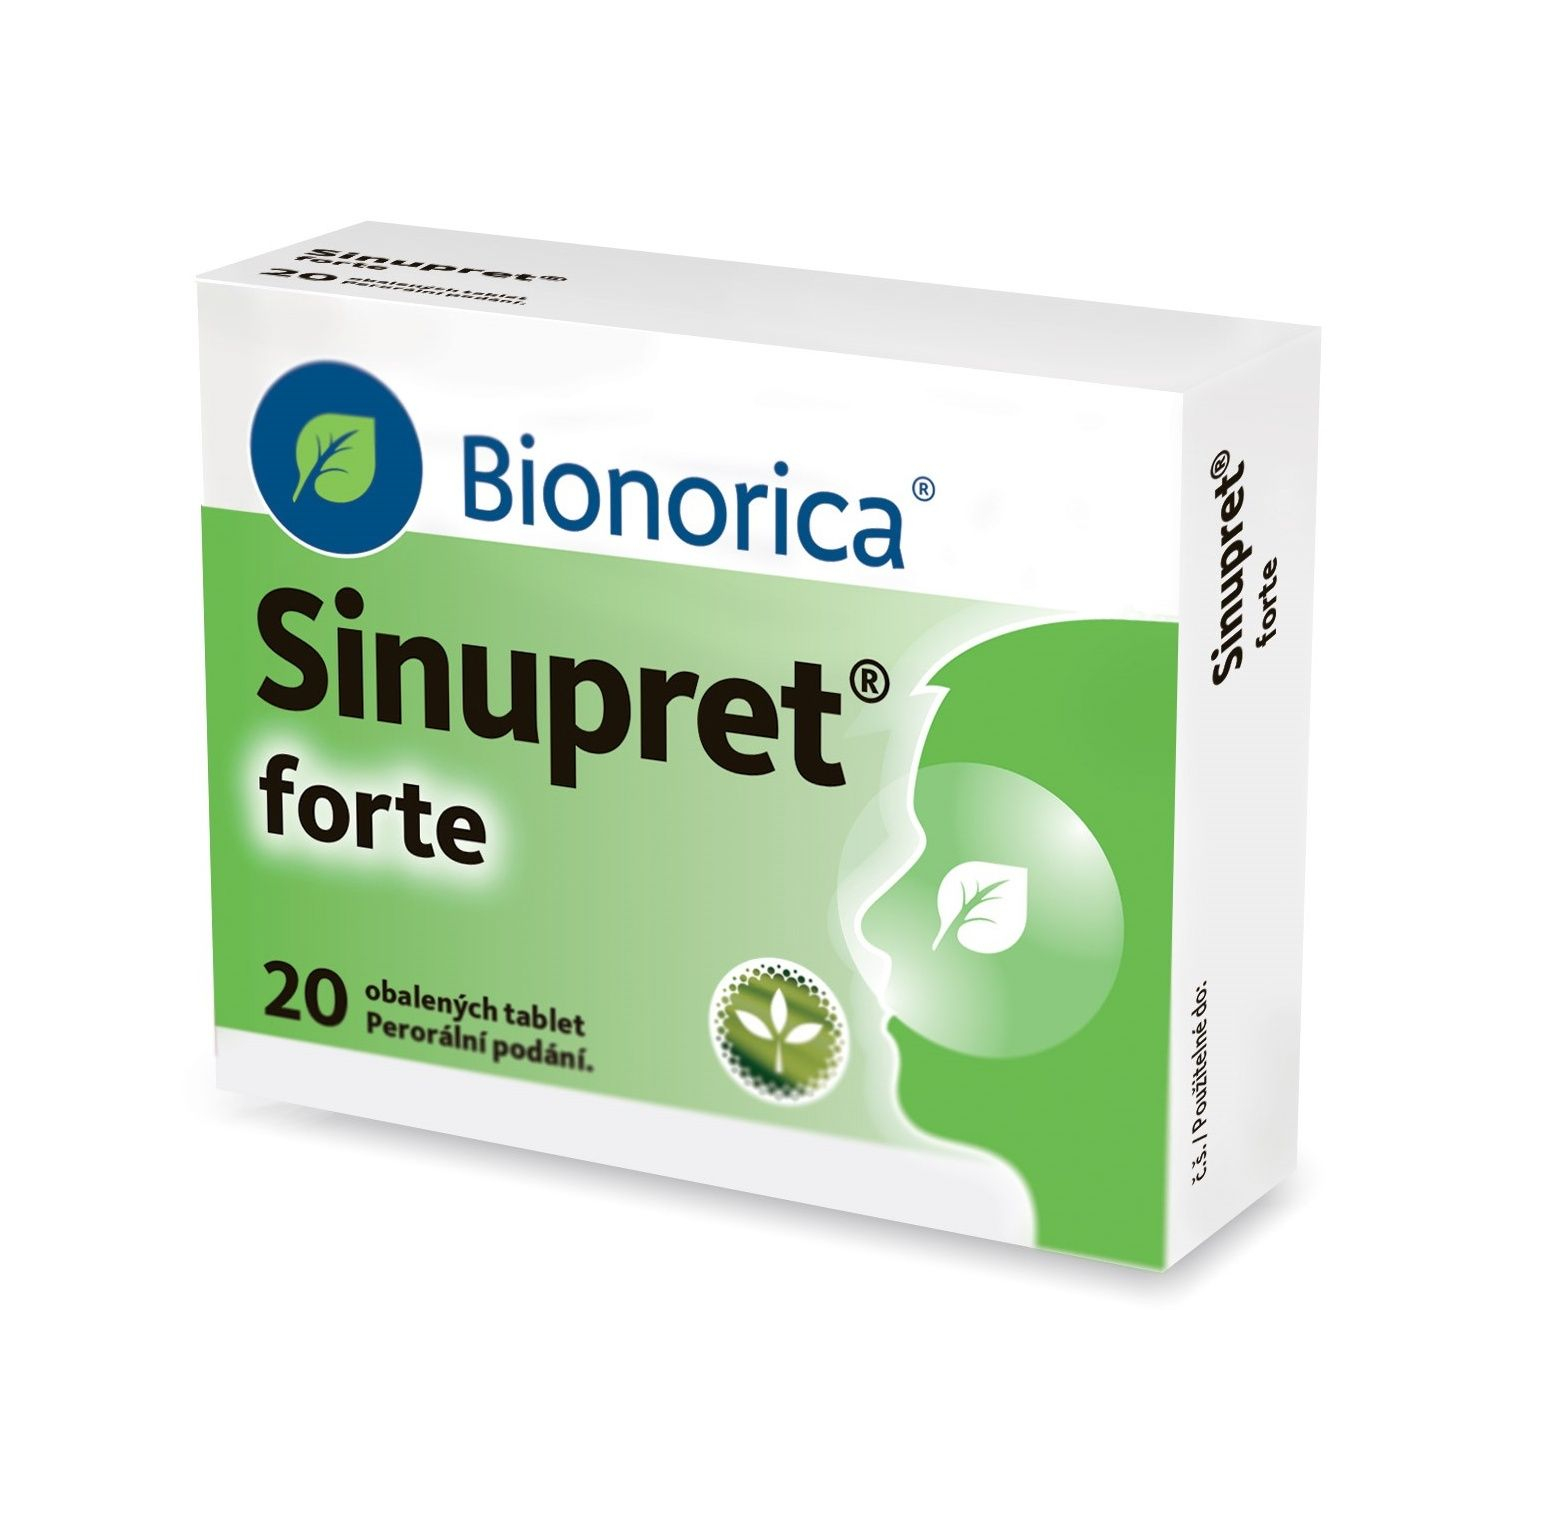 Sinupret forte 20 obalených tablet Sinupret